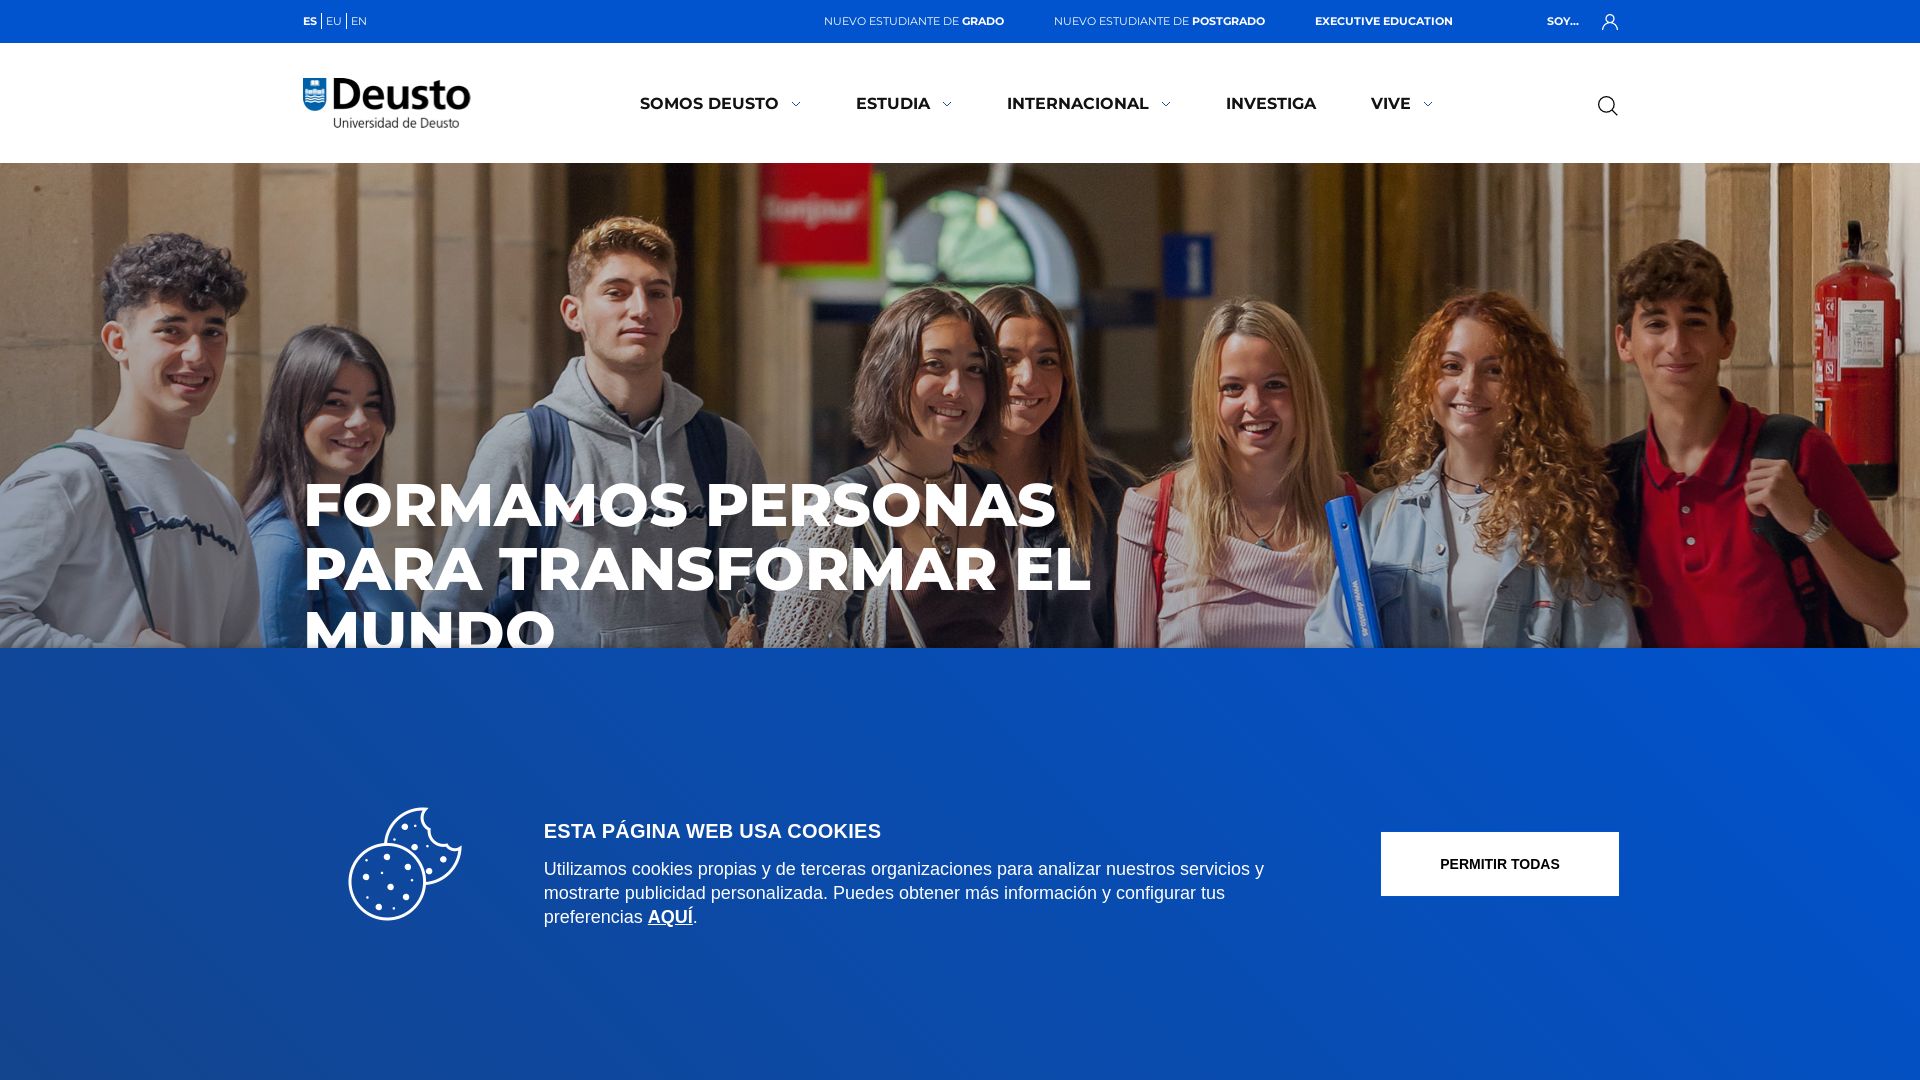 Website status deusto.es is   ONLINE